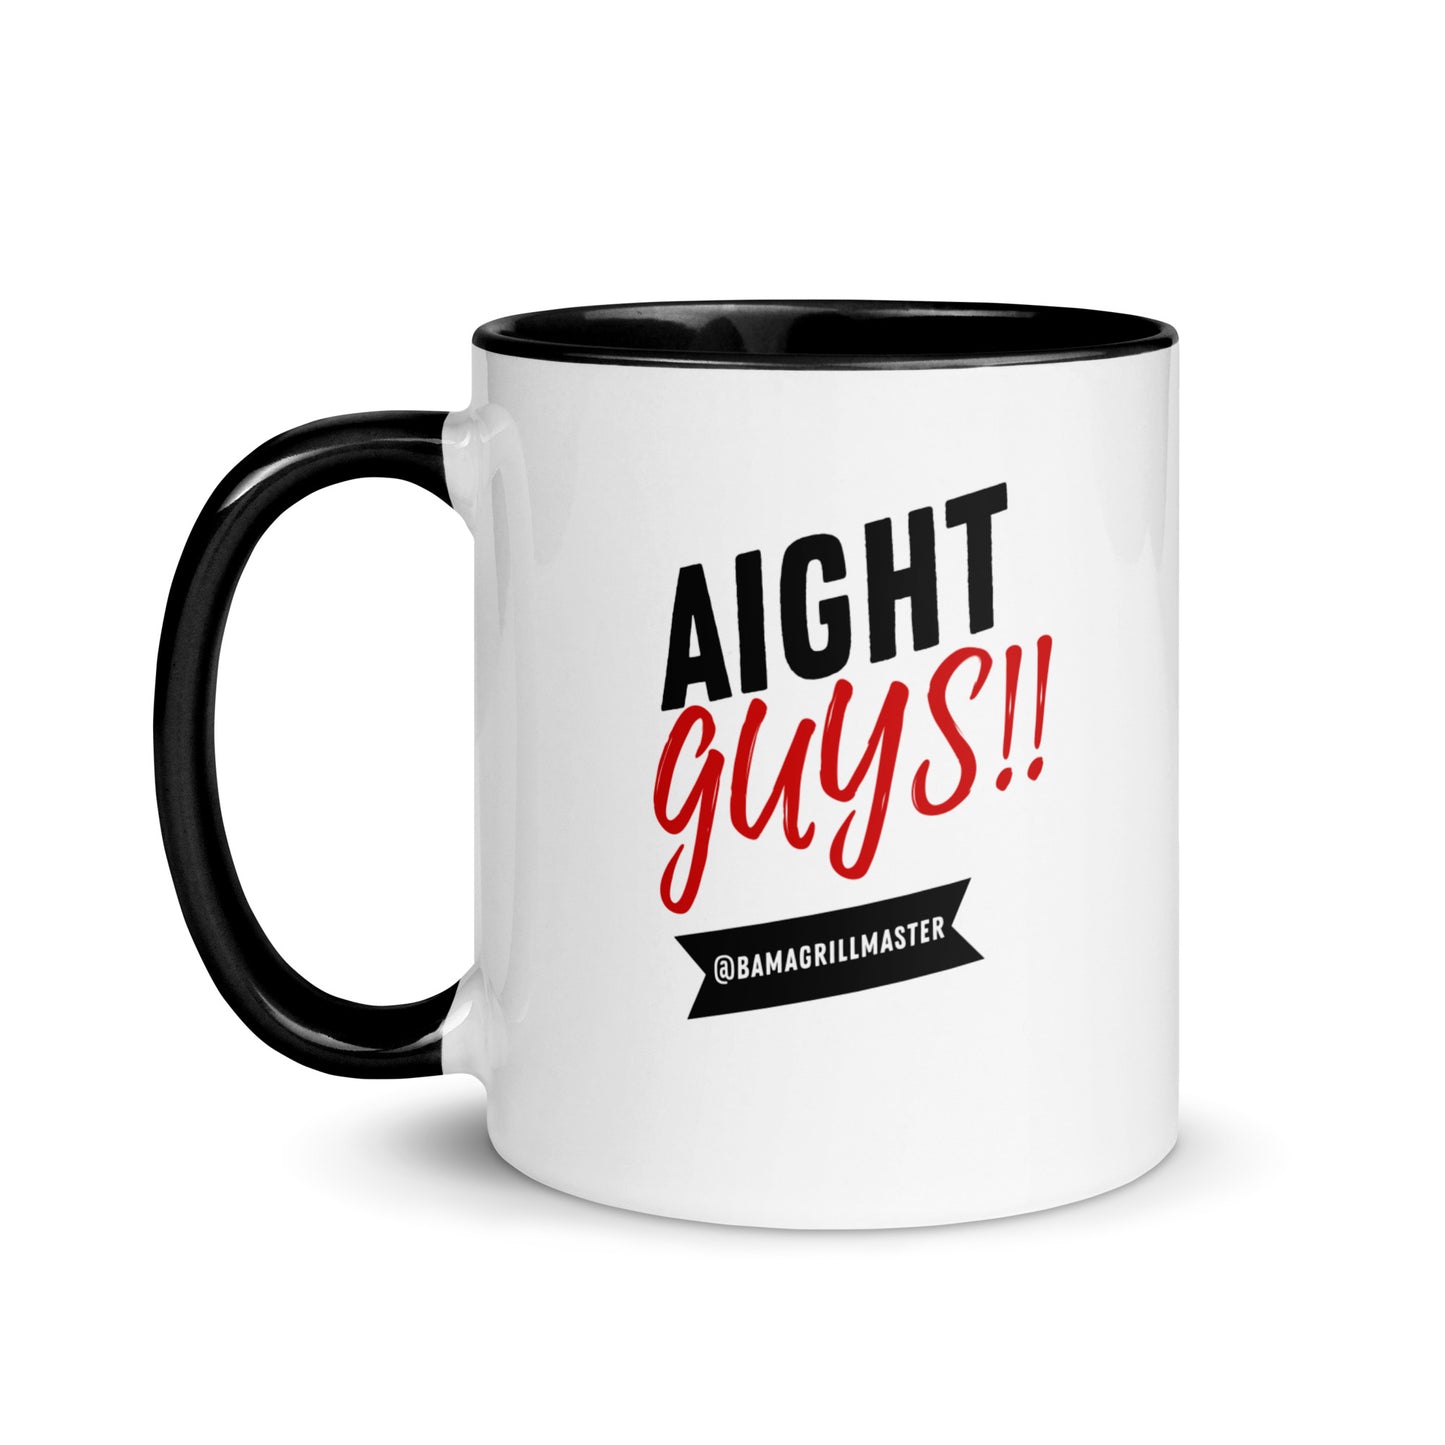 "Aight Guys!!" Mug